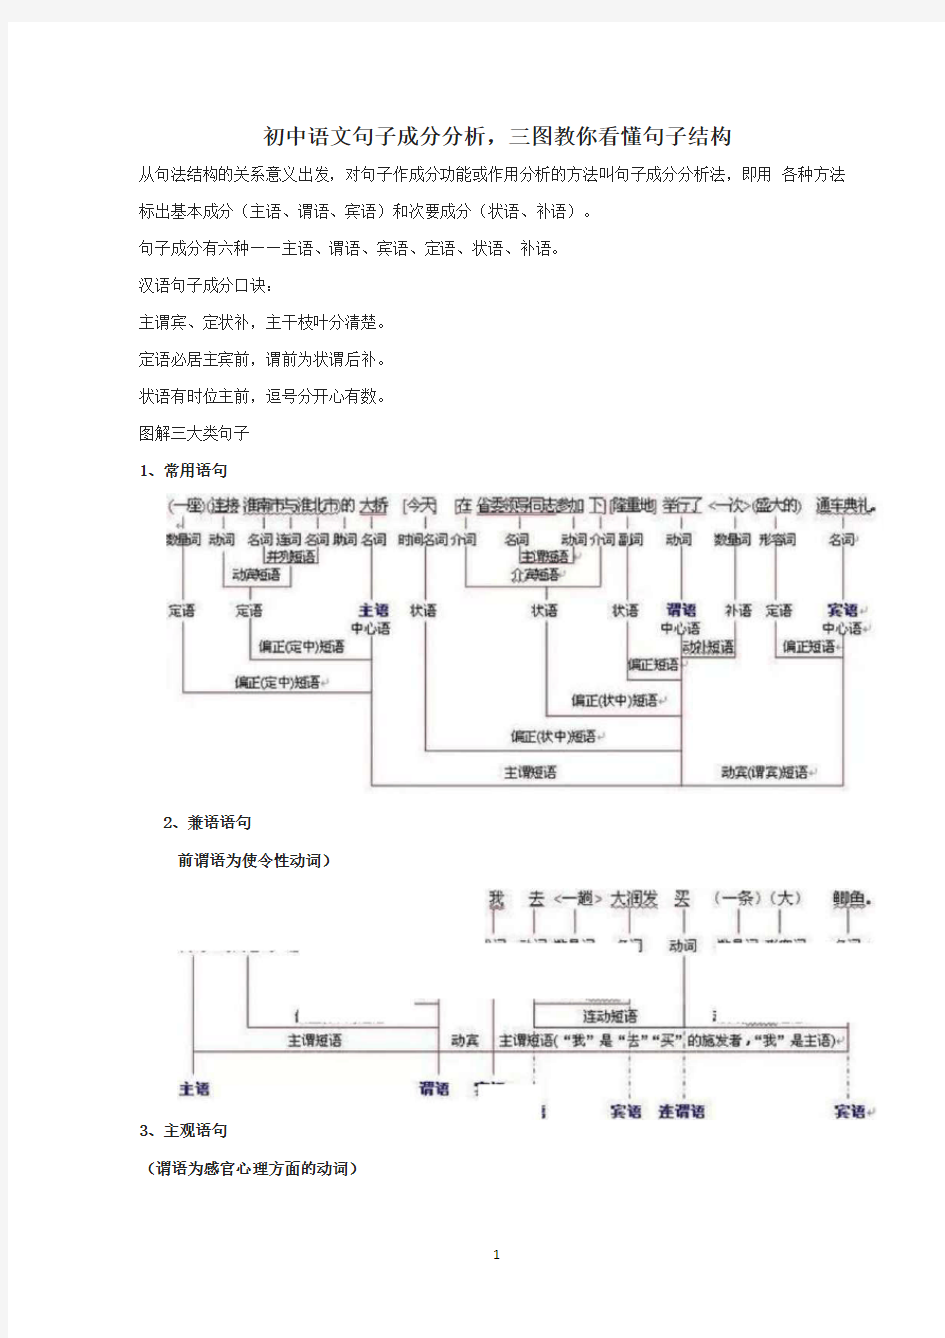 初中语文句子成分分析,三图教你看懂句子结构